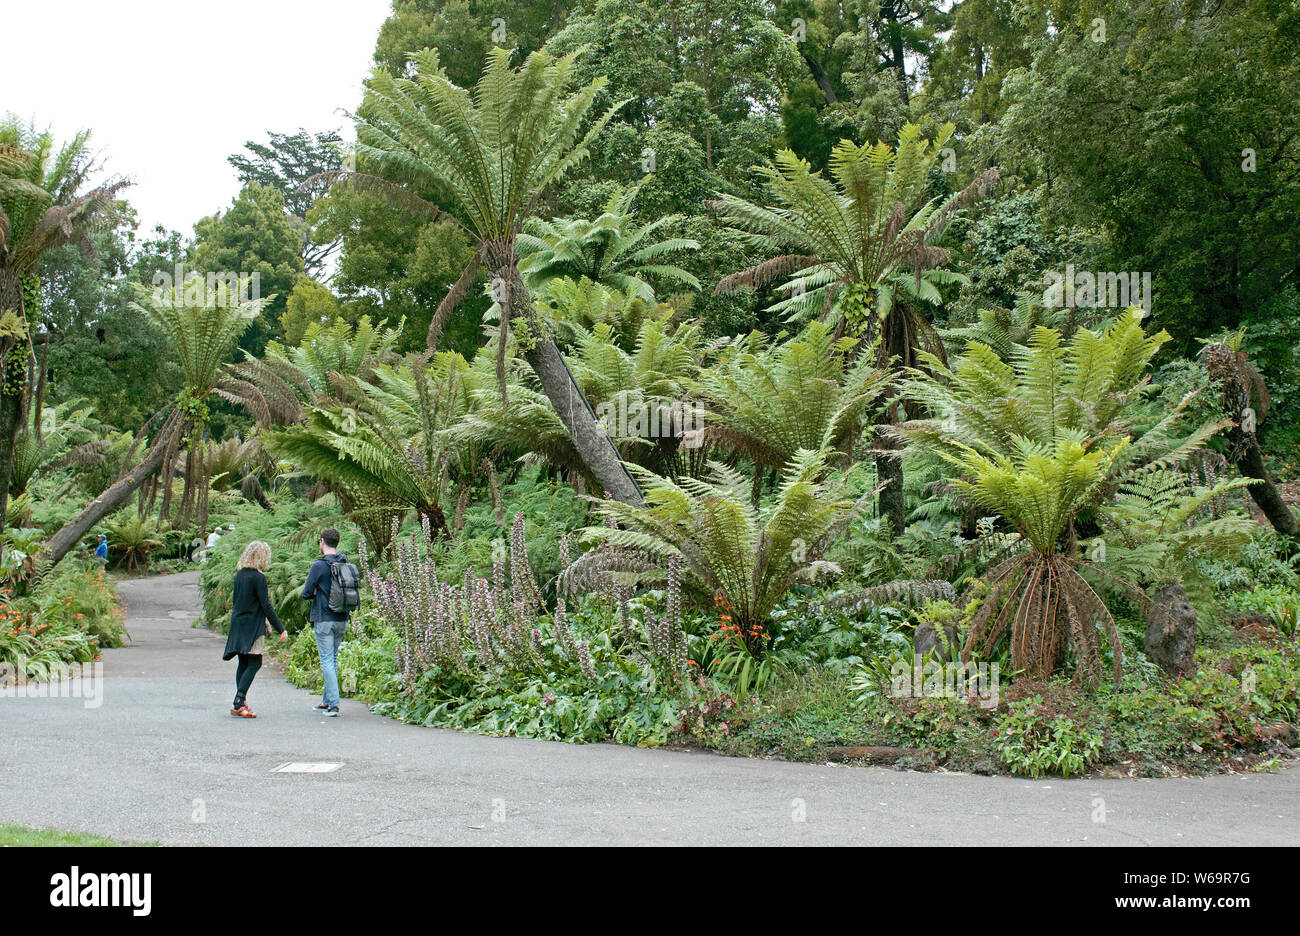 Les fougères arborescentes line une partie du chemin à pied à San Francisco's Golden Gate Park. Banque D'Images